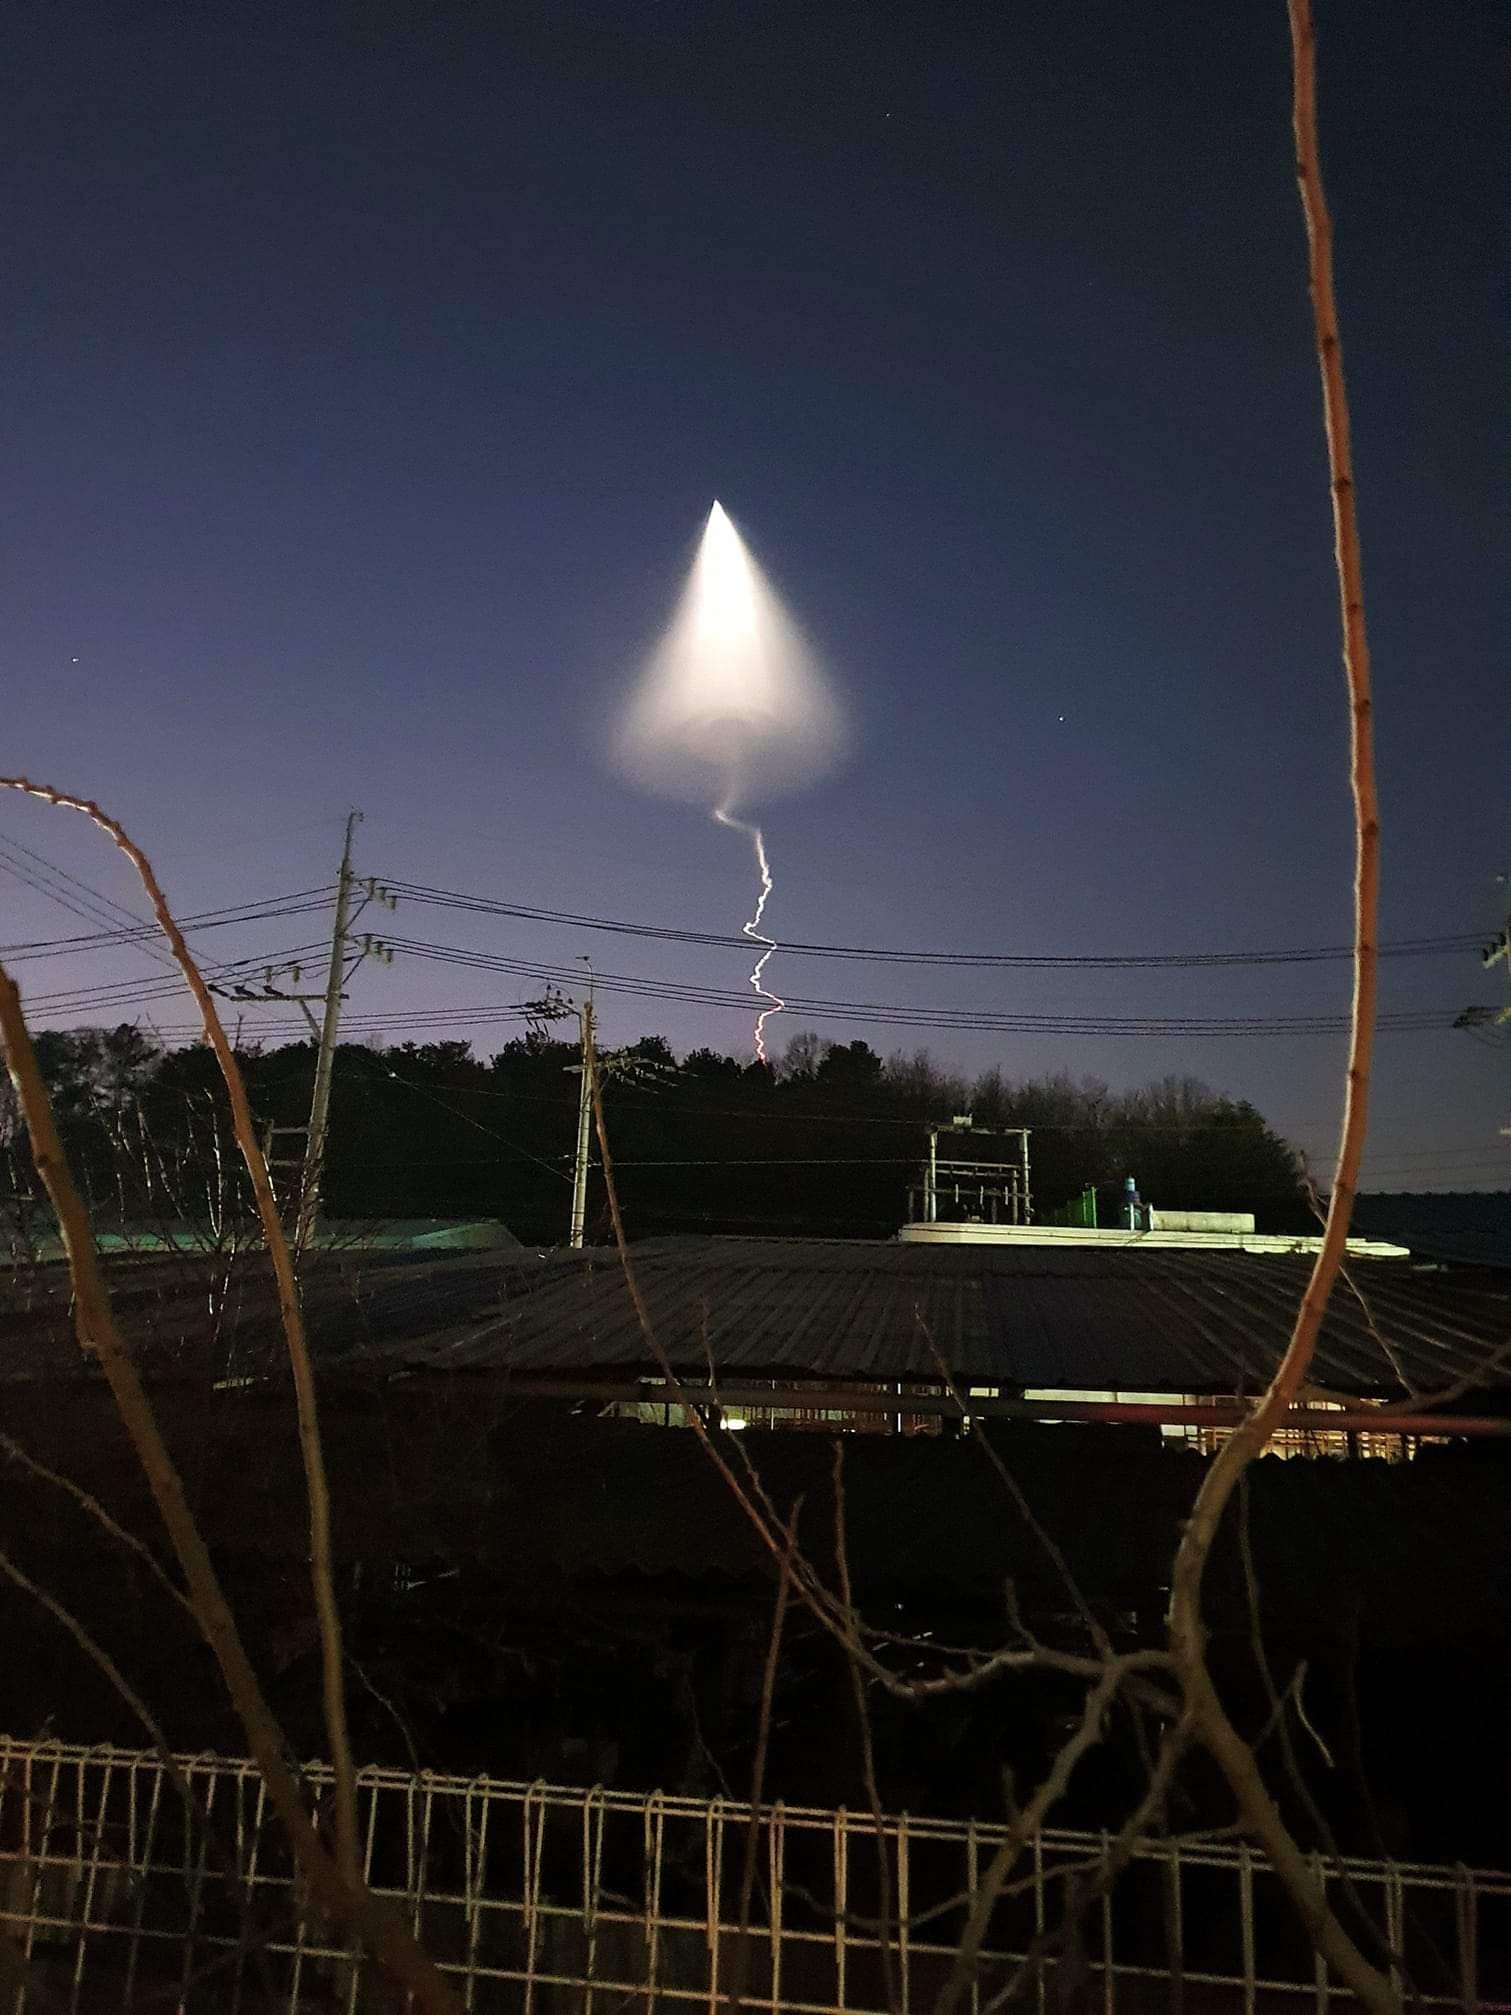 Video lý giải bí ẩn vật thể lạ nghi UFO xuất hiện tại Hàn Quốc gây xôn xao